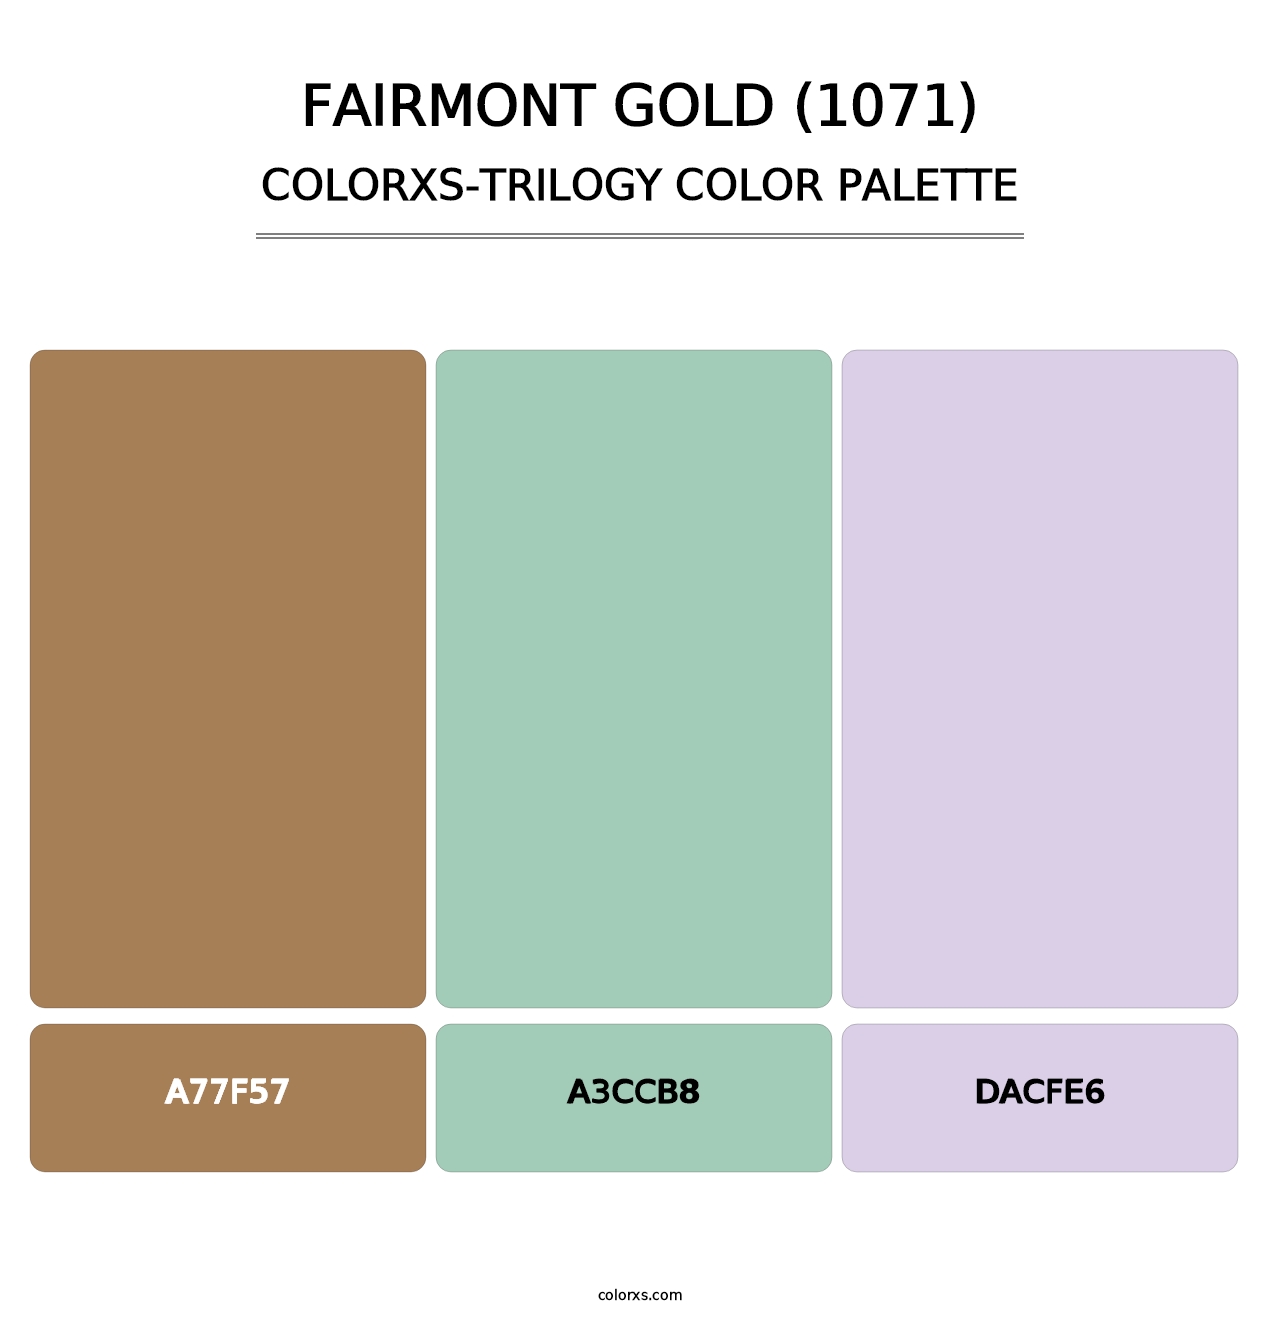 Fairmont Gold (1071) - Colorxs Trilogy Palette